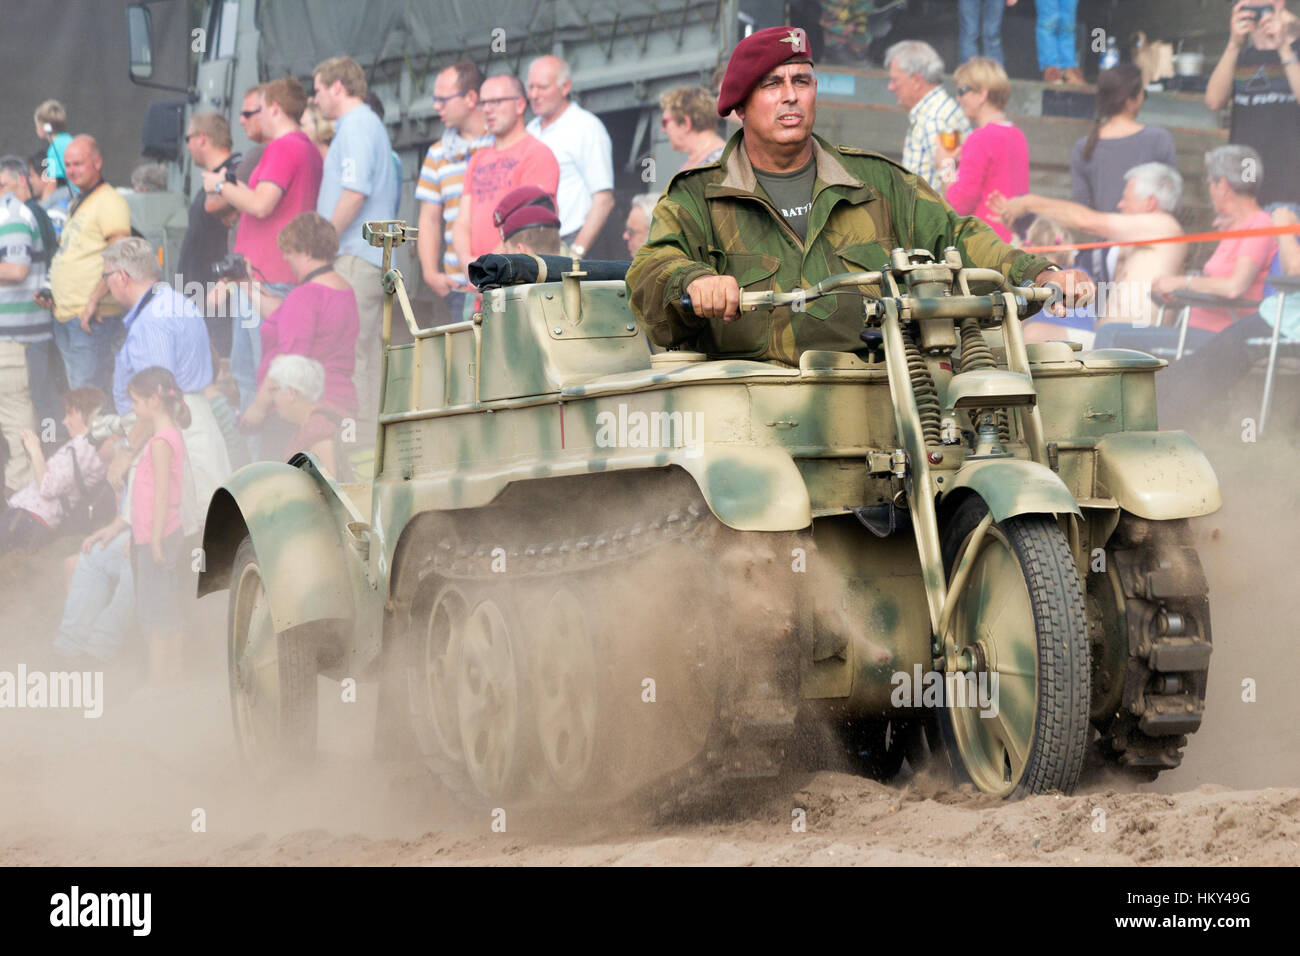 EDE, Niederlande - SEP 20, 2014: Besucher gerade eine Parade in der Gärtnerei-Gedenkstätte. Operation Market Garden war eine große alliierte militärische ope Stockfoto